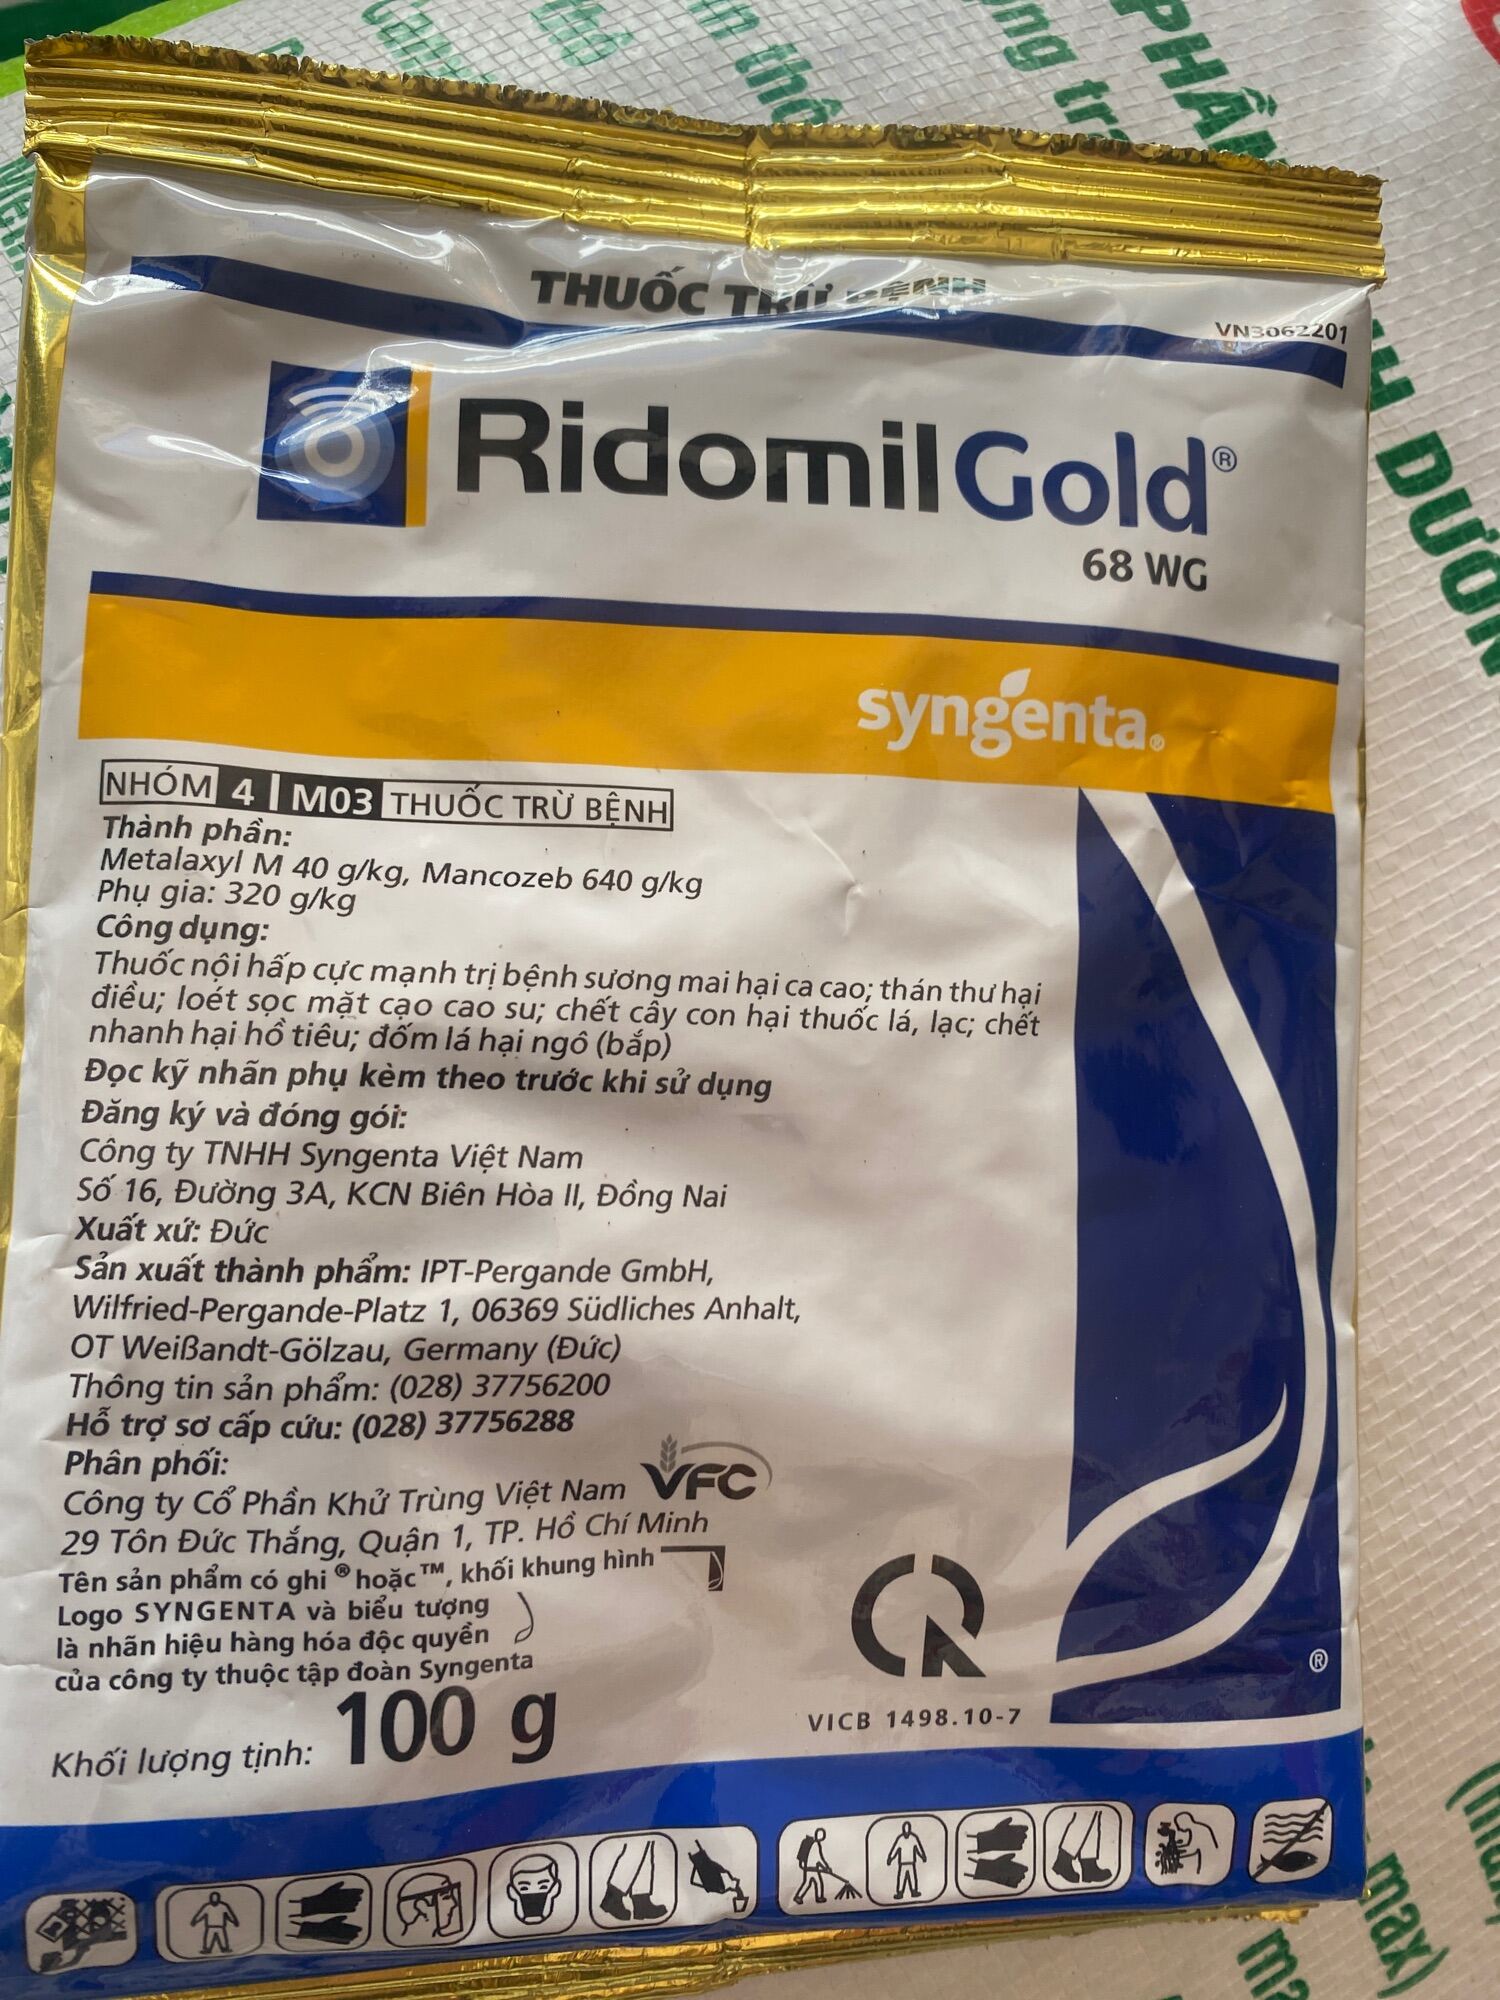 Ridomil gold 100g  thuốc nội hấp cực manh trị bệnh sương mai hại ca cao